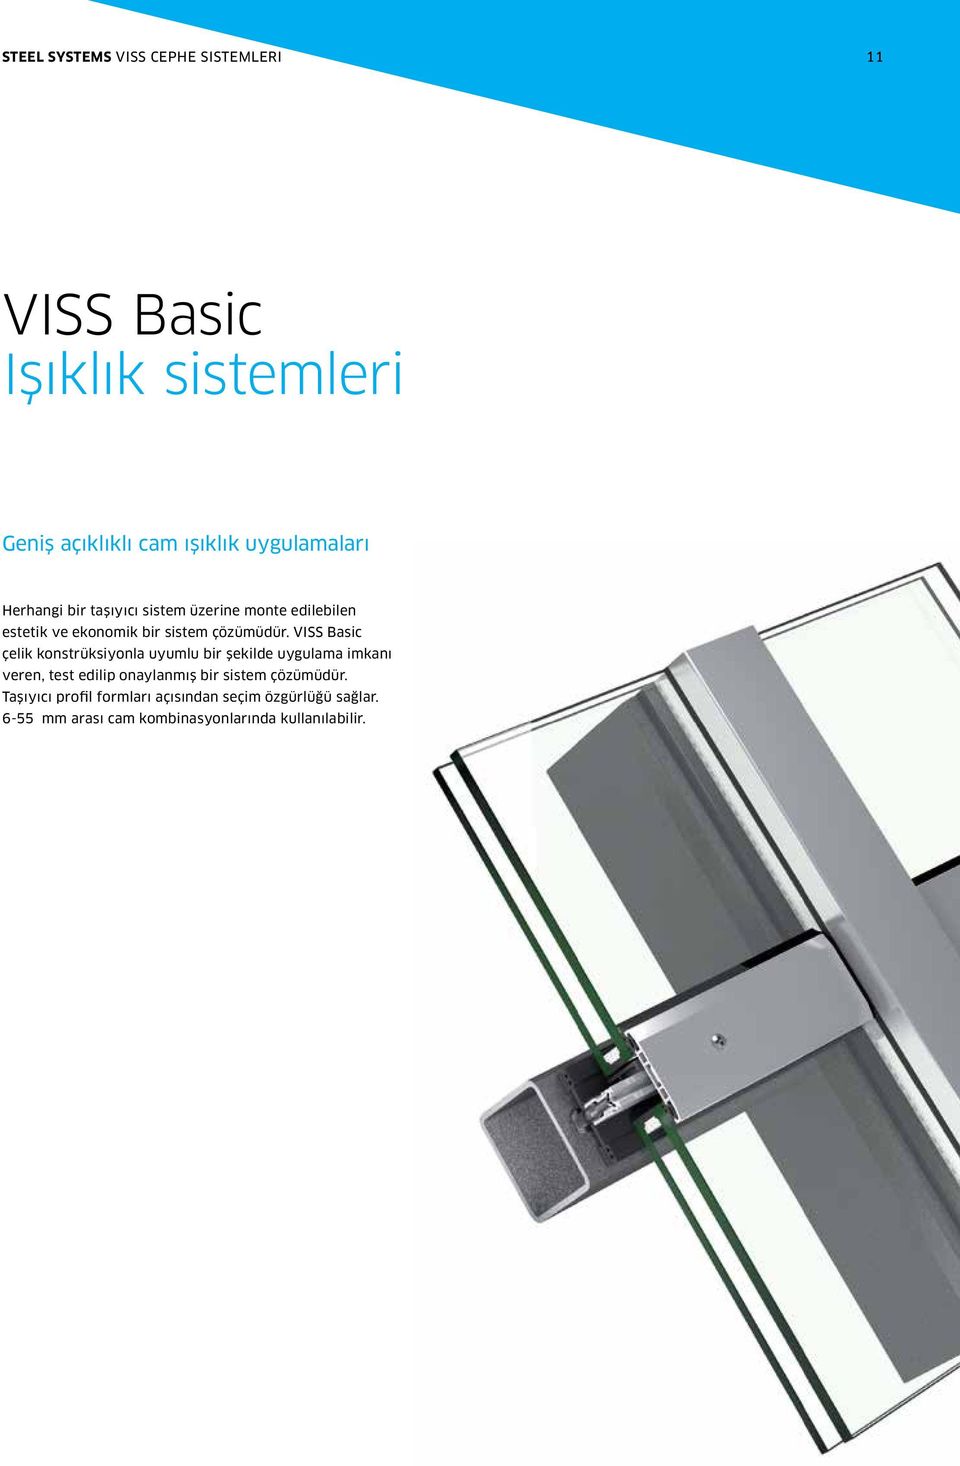 VISS asic çelik konstrüksiyonla uyumlu bir şekilde uygulama imkanı veren, test edilip onaylanmış bir sistem